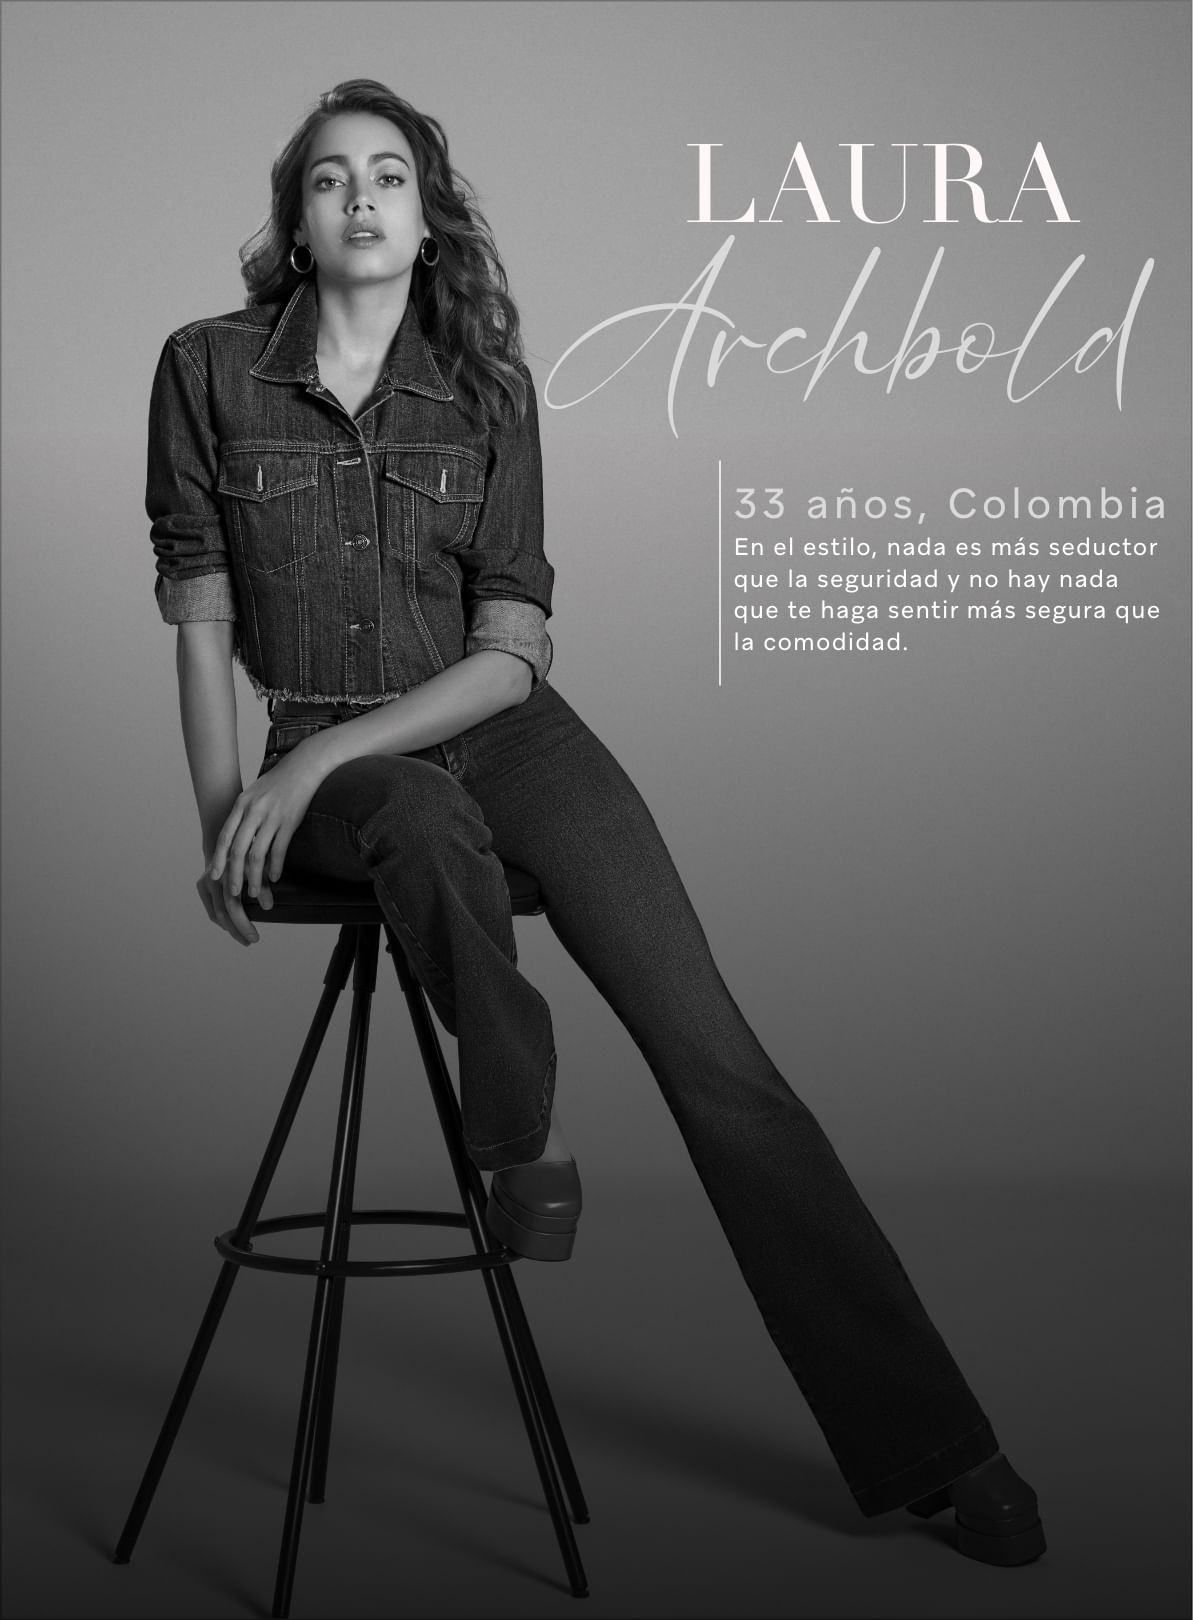 Laura Archbold sentada sobre una silla vistiendo total look denim: chamarra, jean, correa y zapatos de la marca Studio F